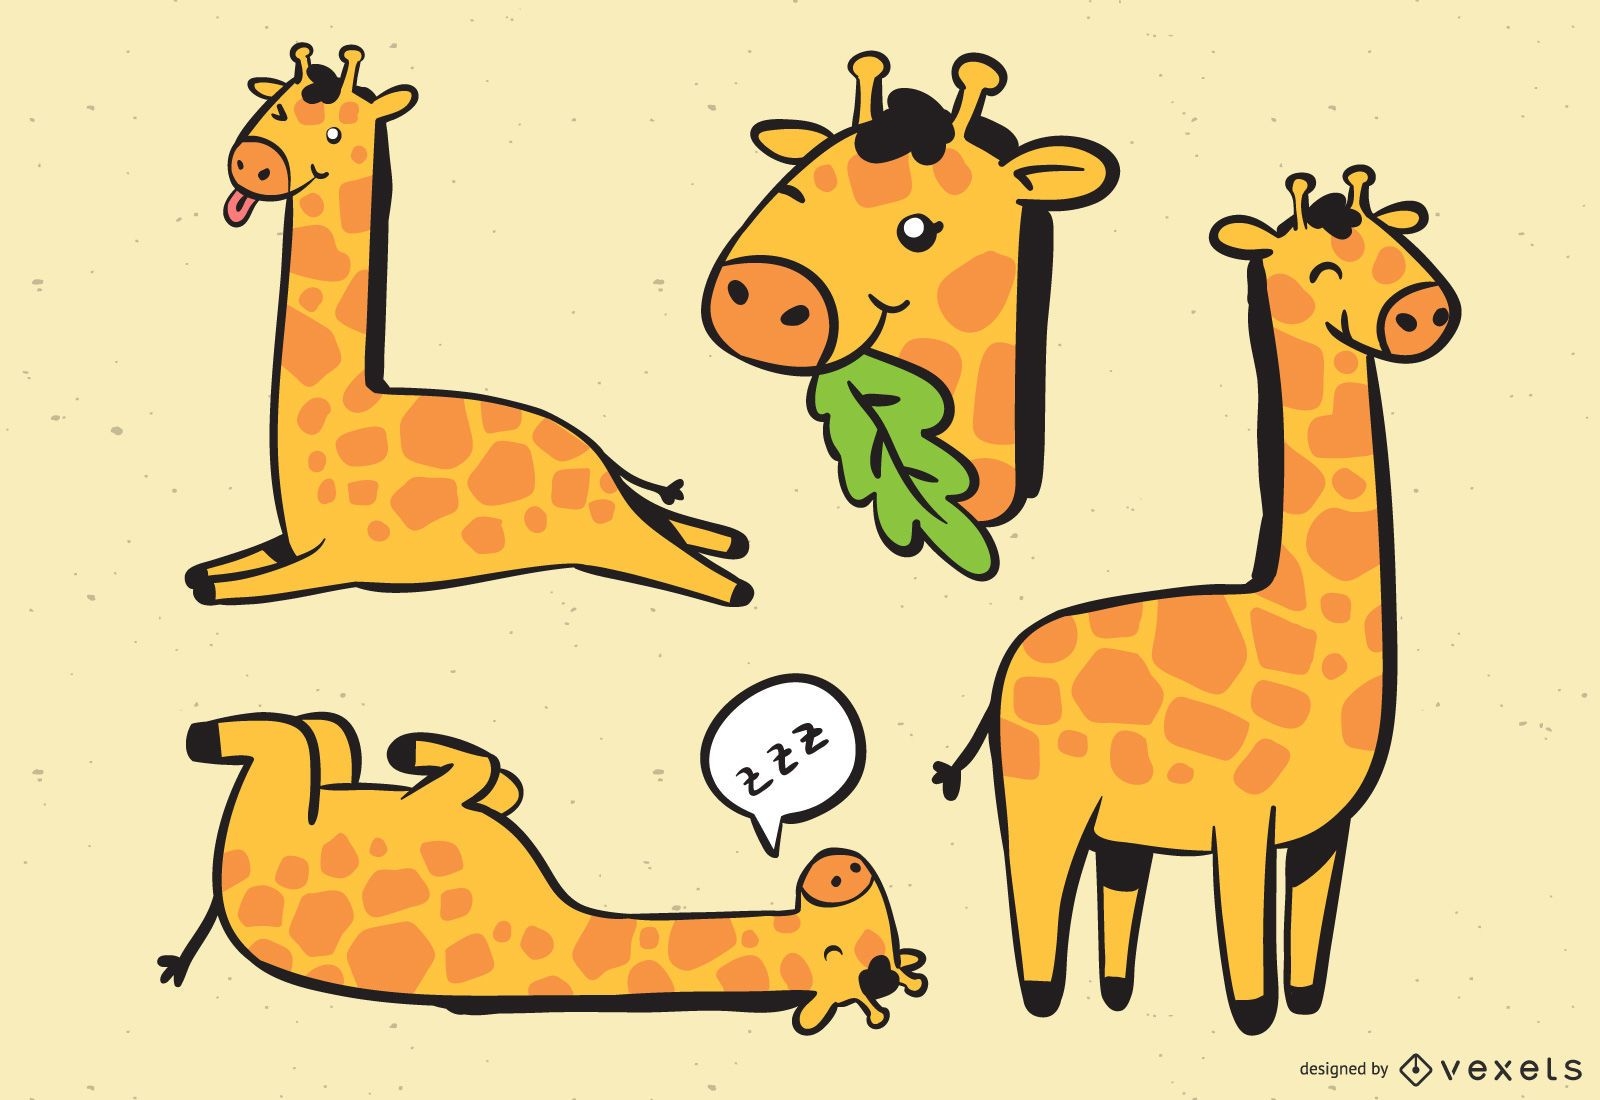 Ilustra??o da cole??o de girafas fofas